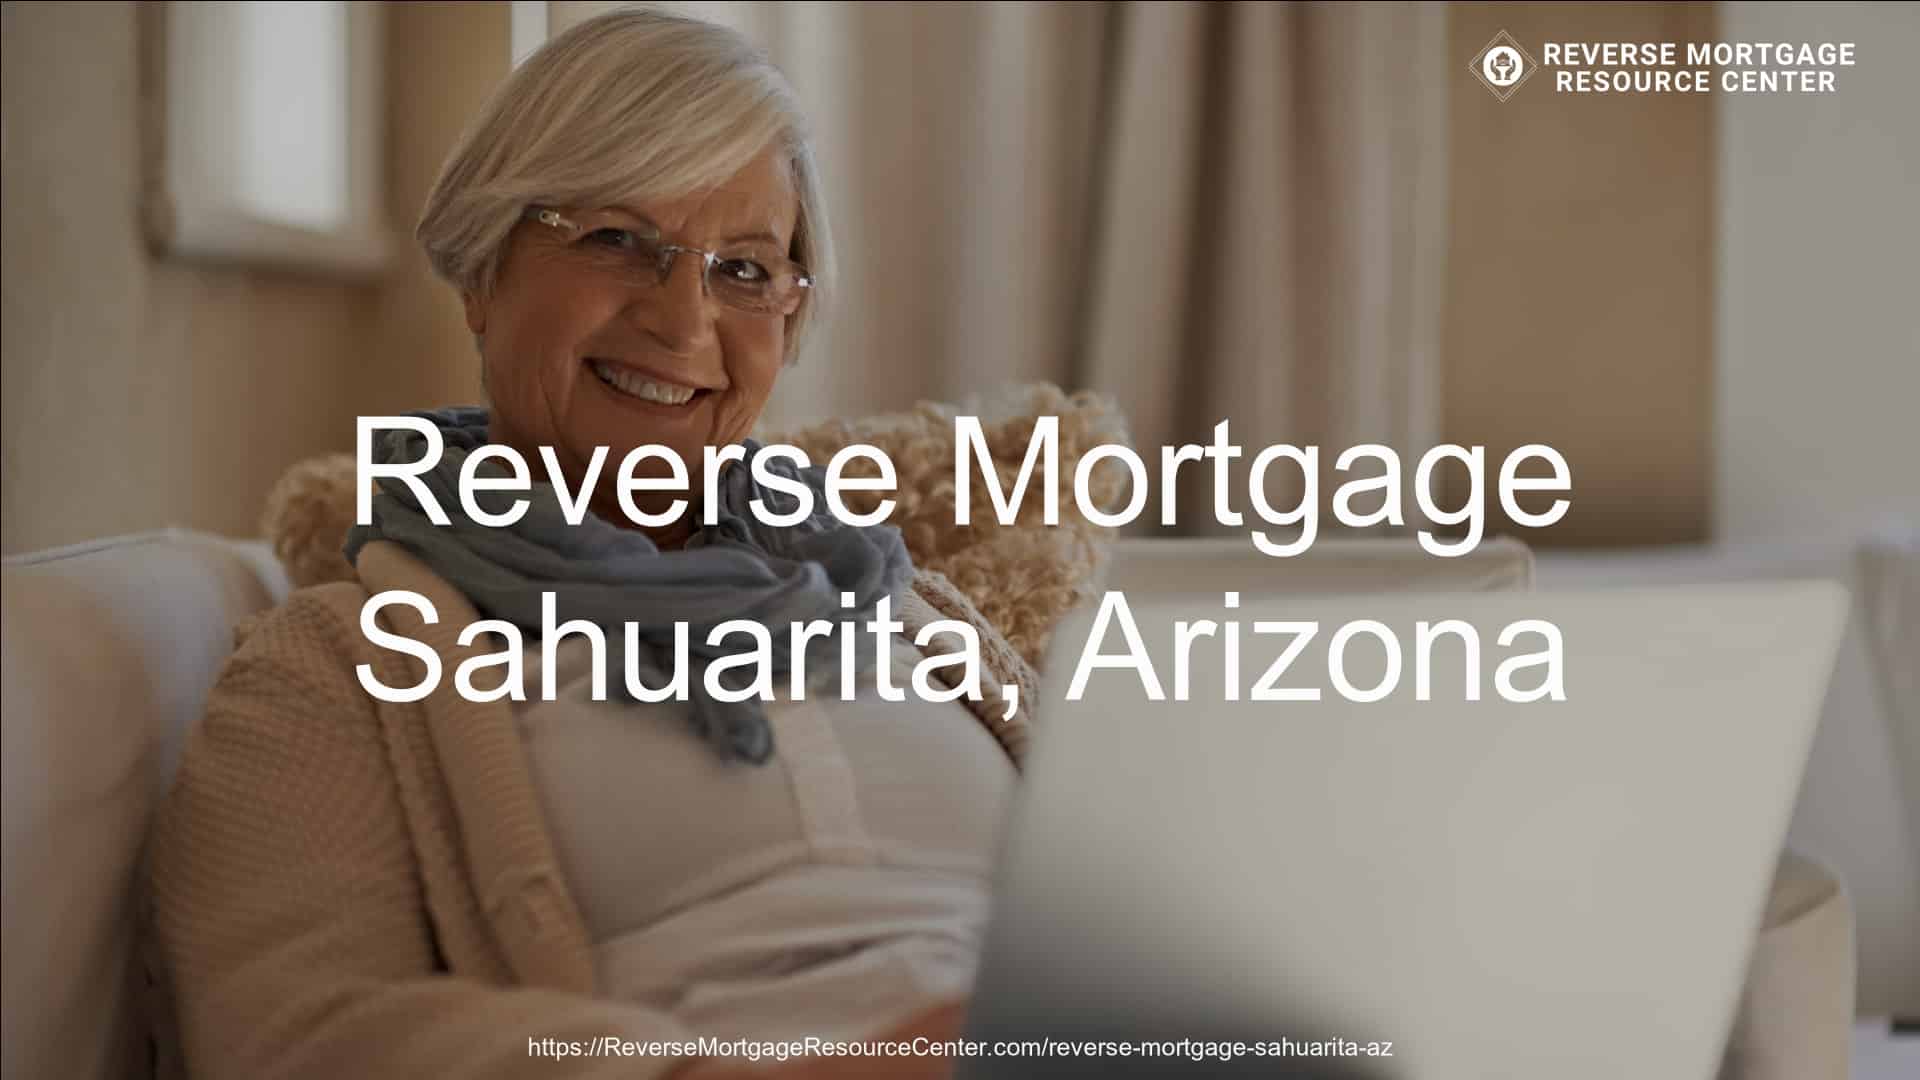 Reverse Mortgage Loans in Sahuarita Arizona